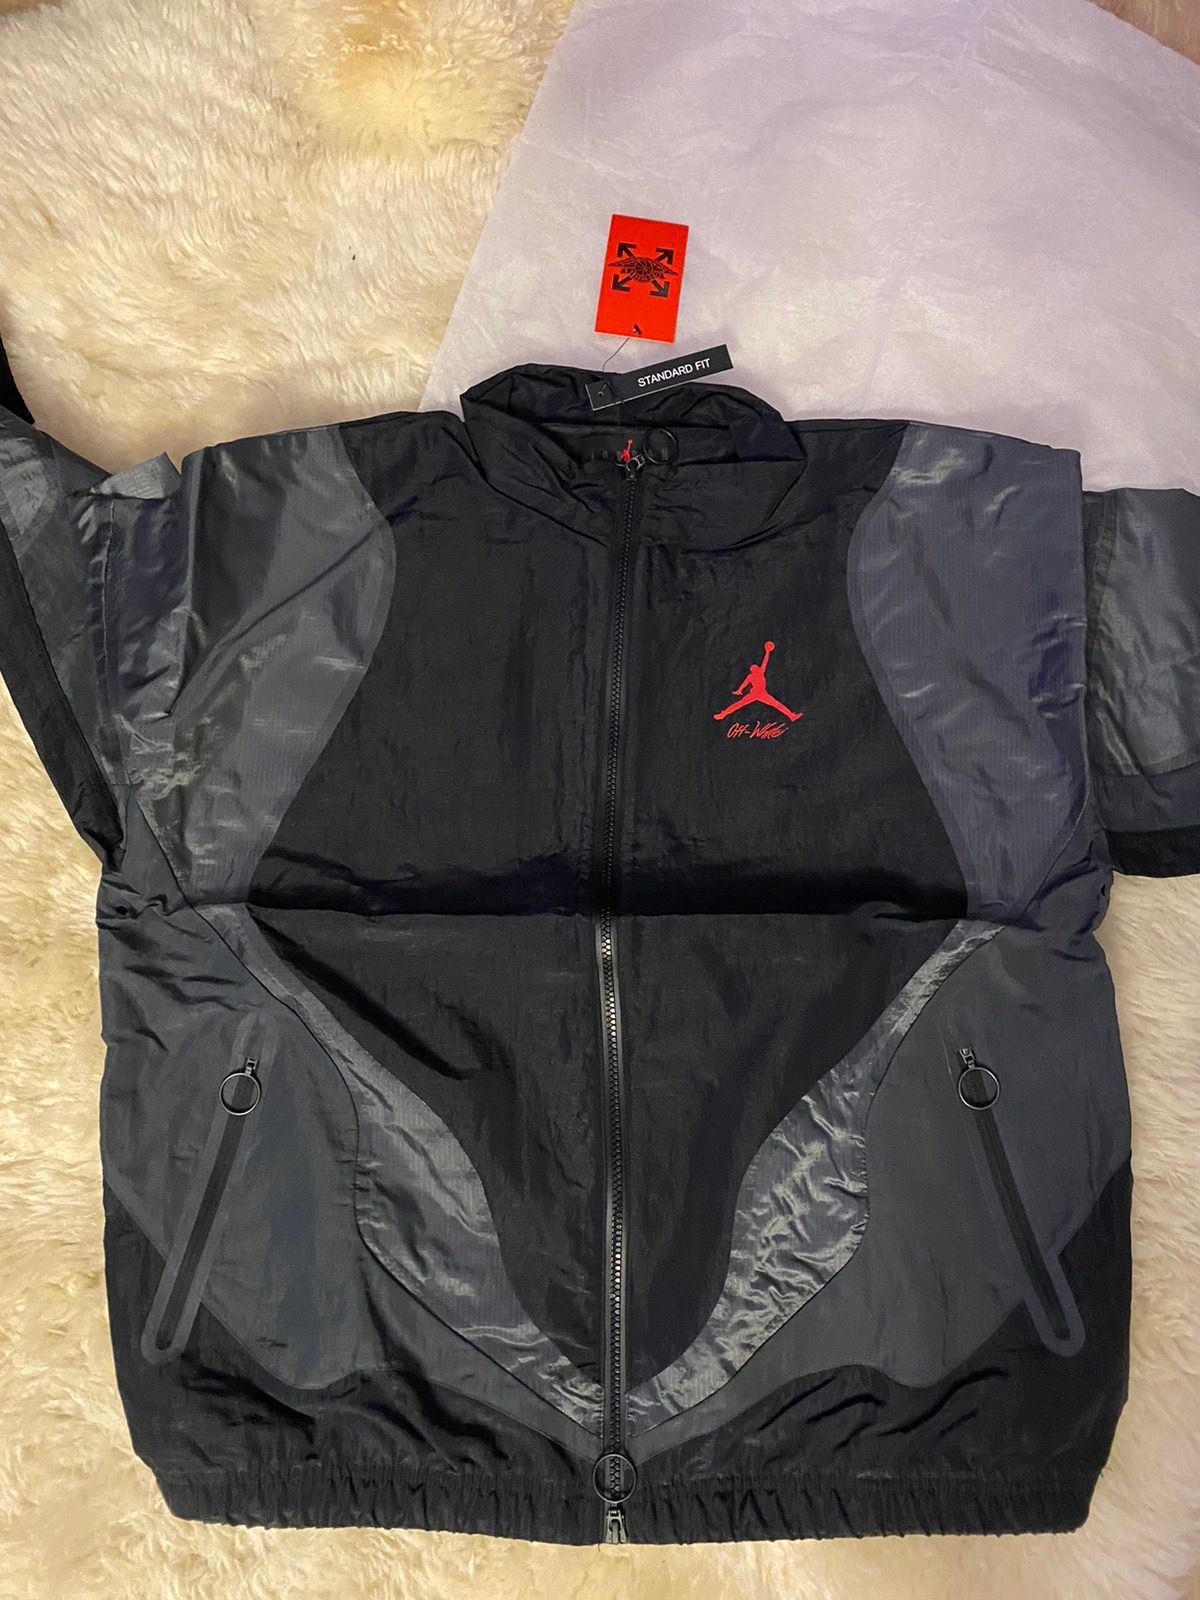 Jordan Brand OFF-WHITE x Jordan Woven Jacket Black in hand! | Grailed